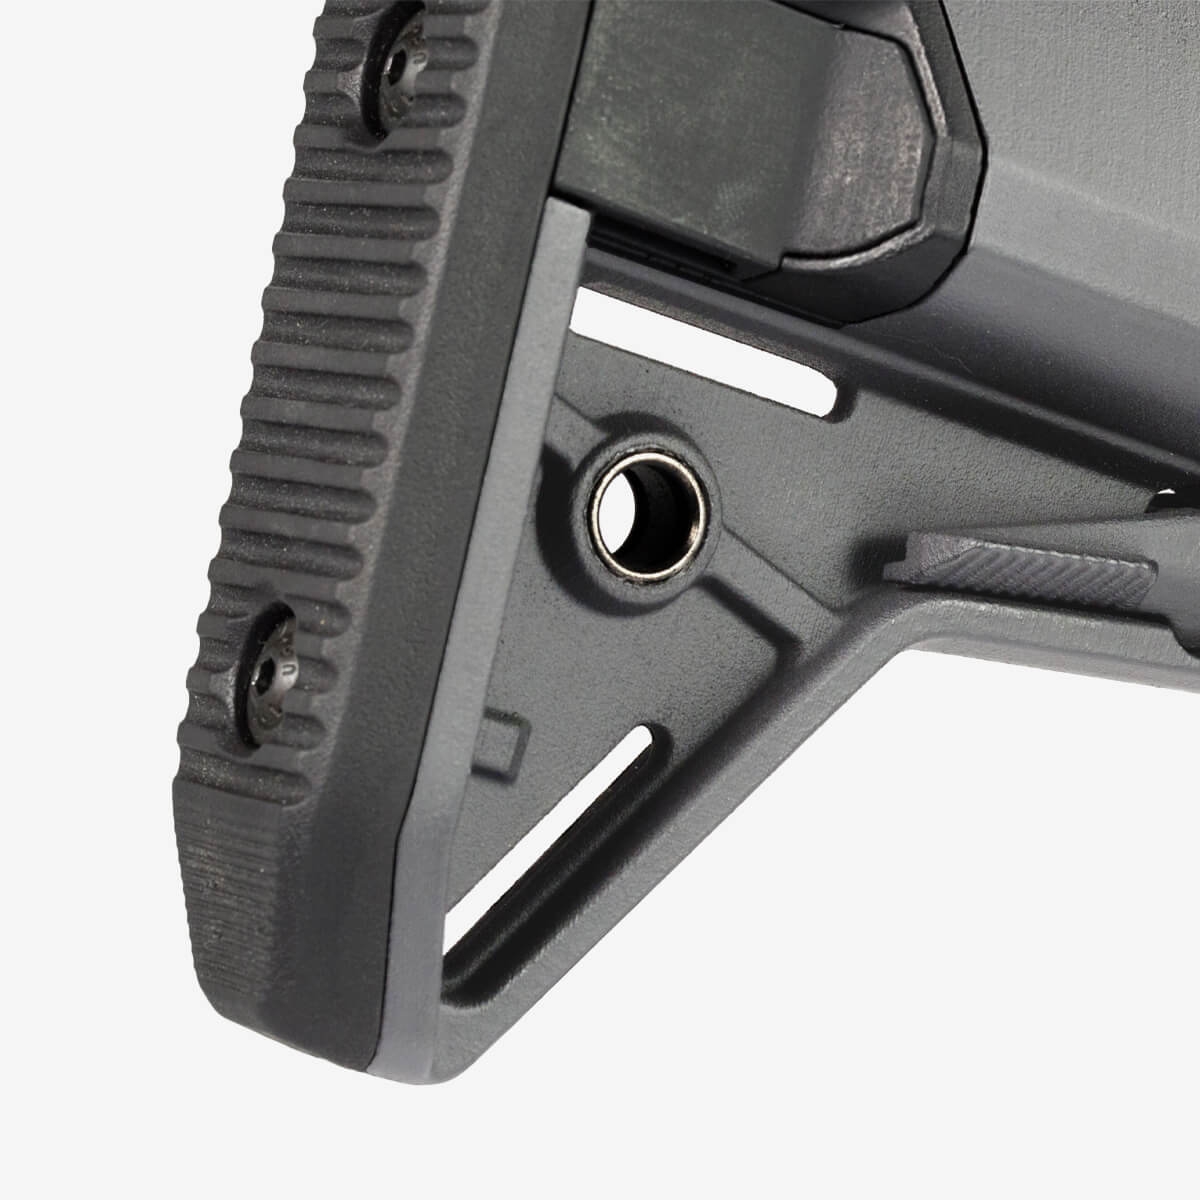 MOE® SL-S™ Carbine Stock – Mil-Spec Gray